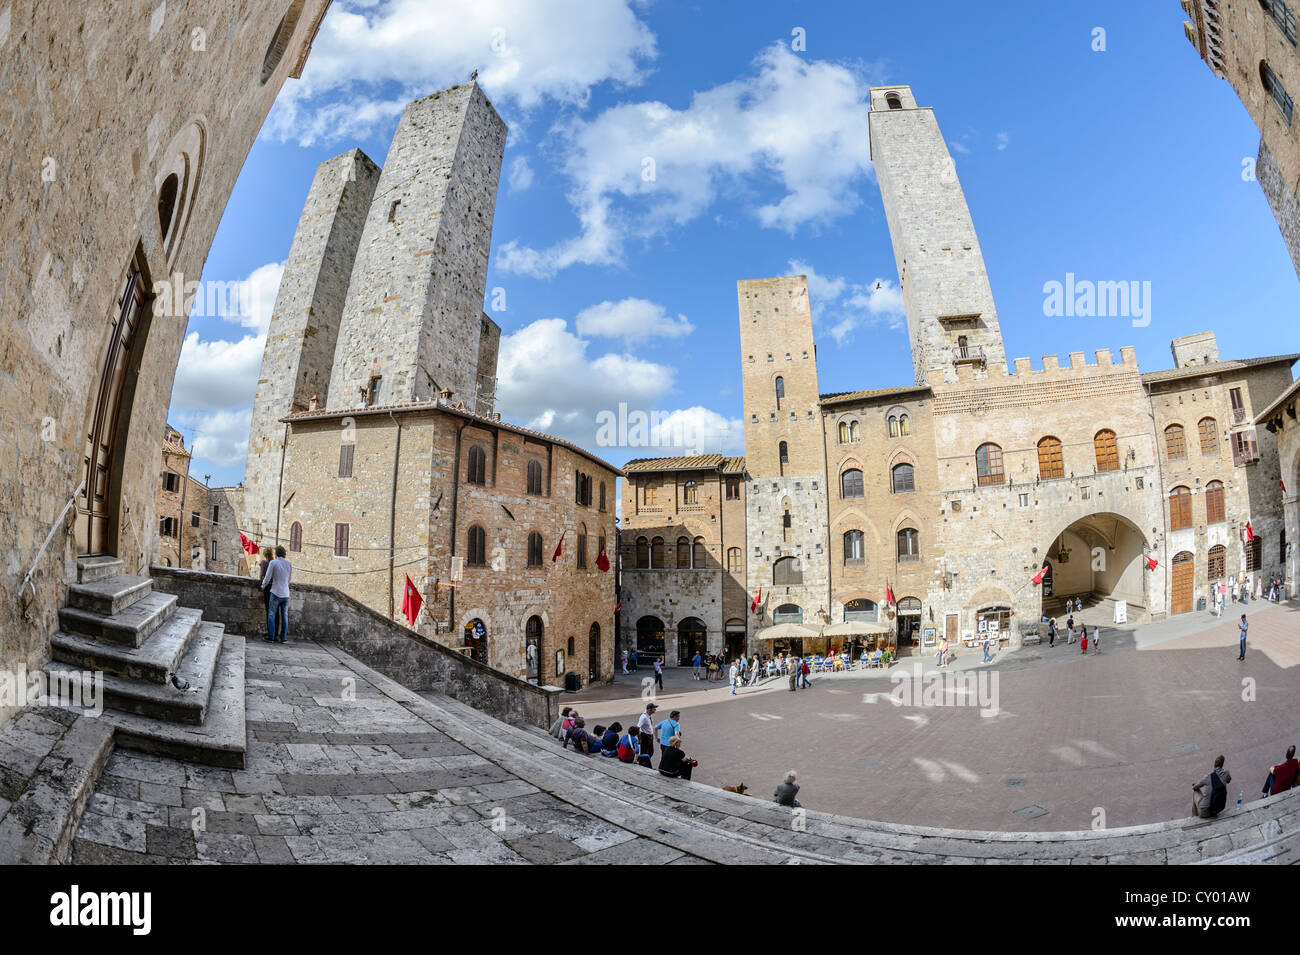 Place principale dans le centre-ville médiéval, tours de San Gimignano, Toscane, Italie, Europe Banque D'Images